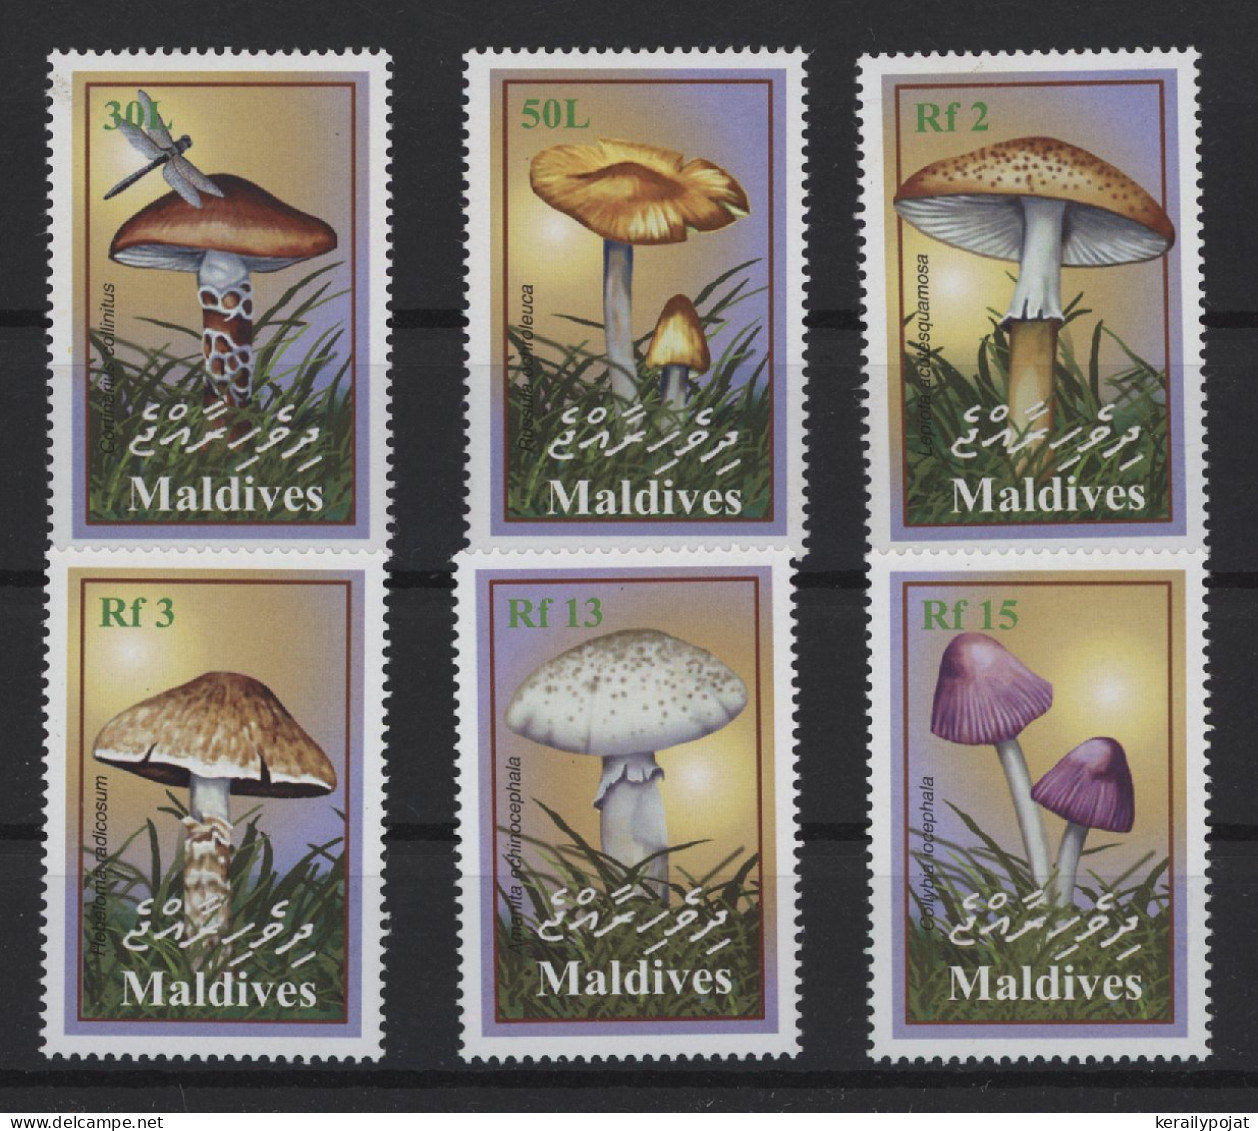 Maldives - 2001 Mushrooms MNH__(TH-24531) - Maldives (1965-...)